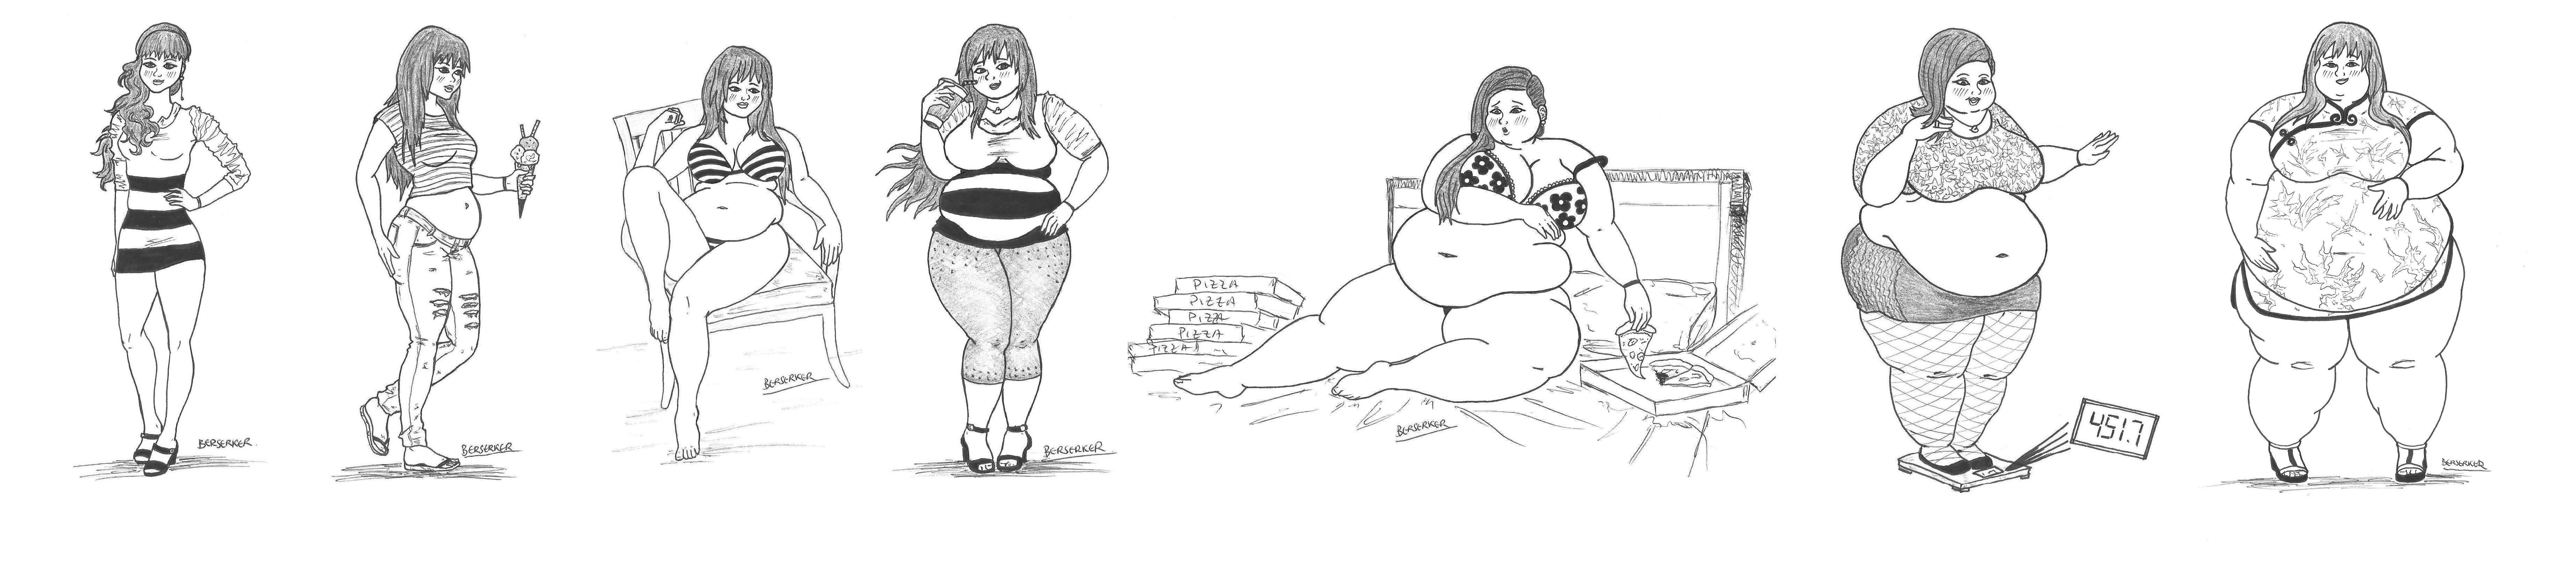 Секс как любимое занятие толстых девушек